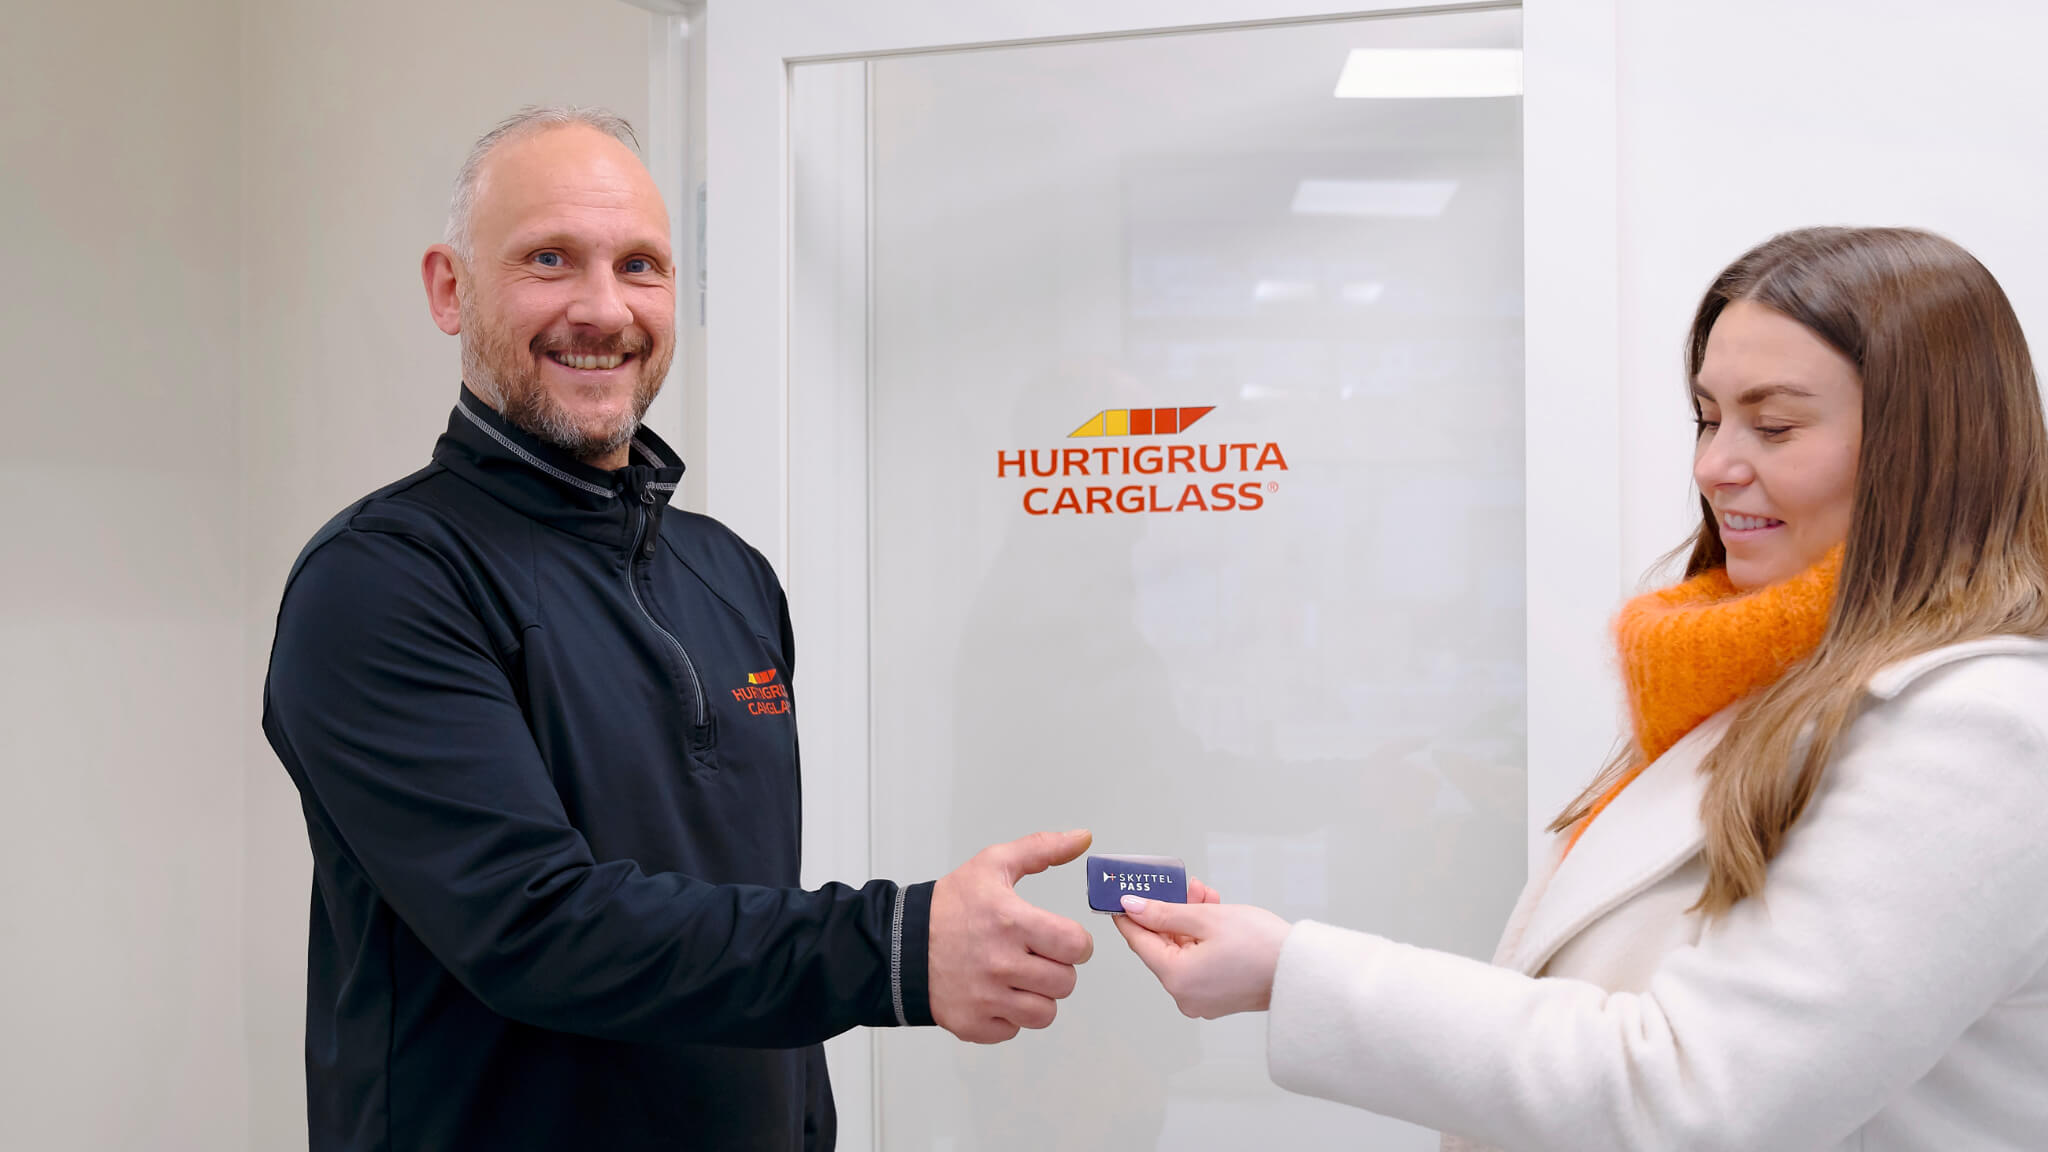 Partner agreement between SkyttelPASS and Hurtigruta Carglass